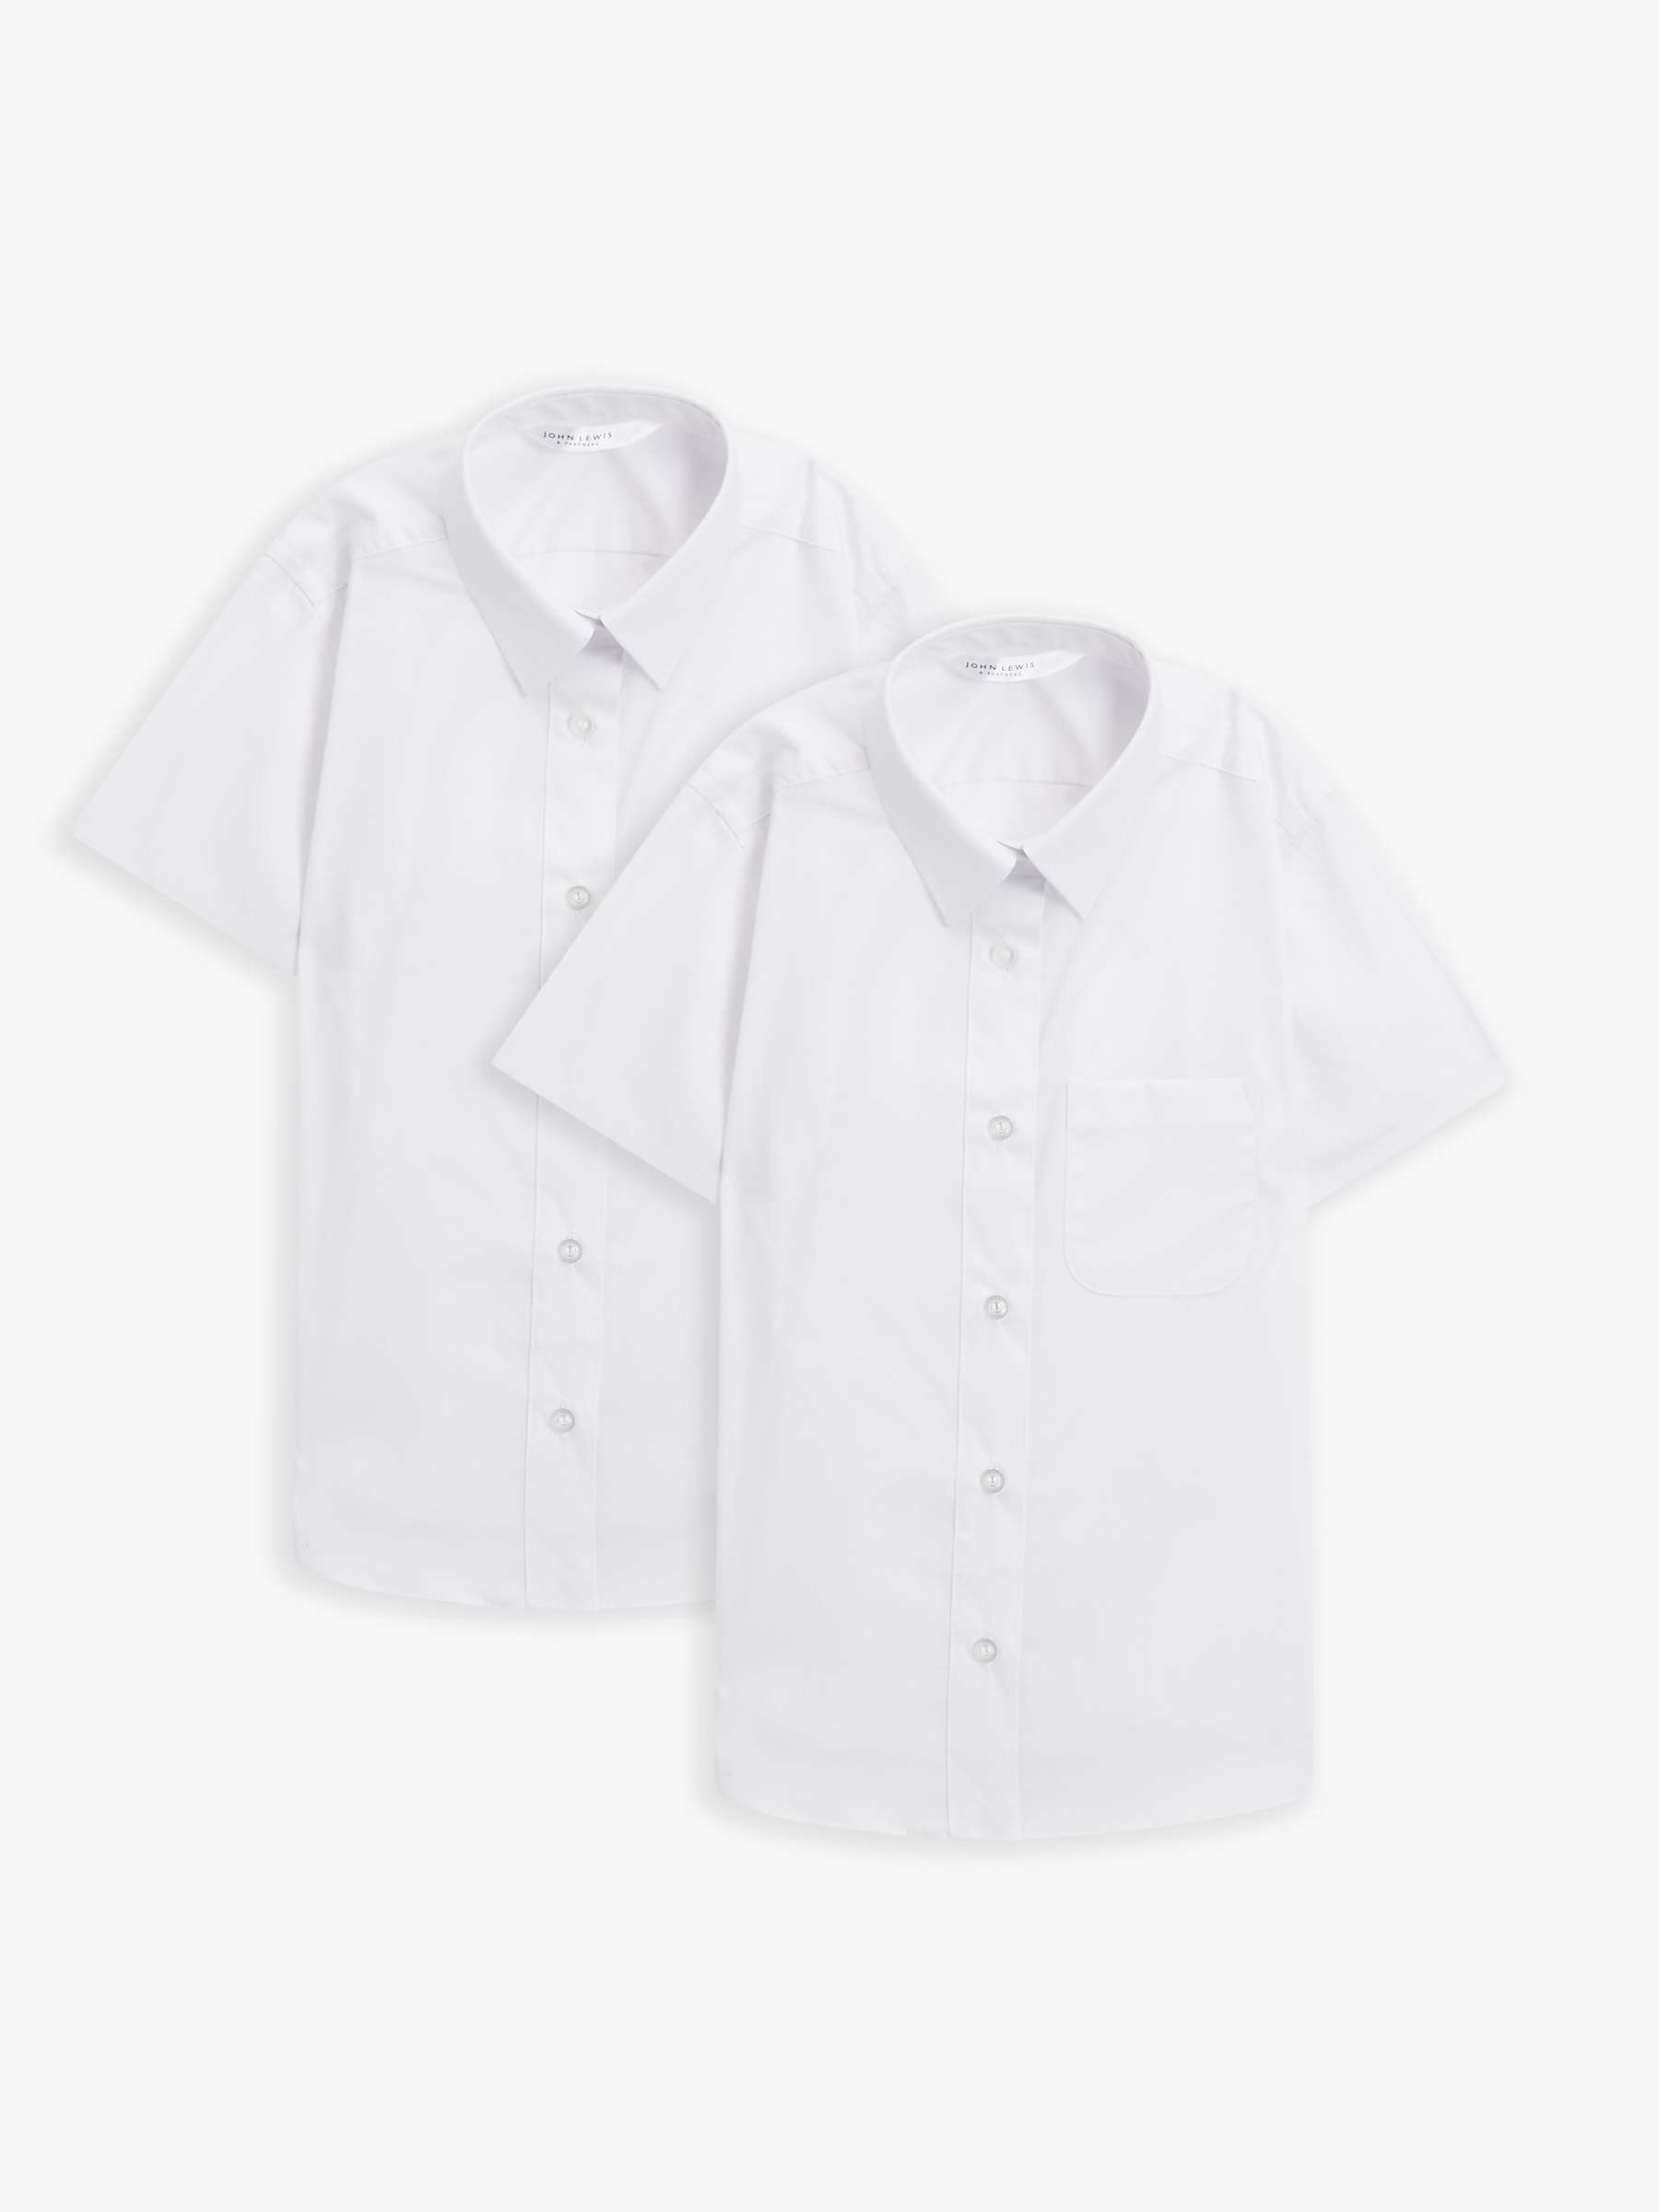 Buy John Lewis Short Sleeve School Blouse, Pack of 2 Online at johnlewis.com